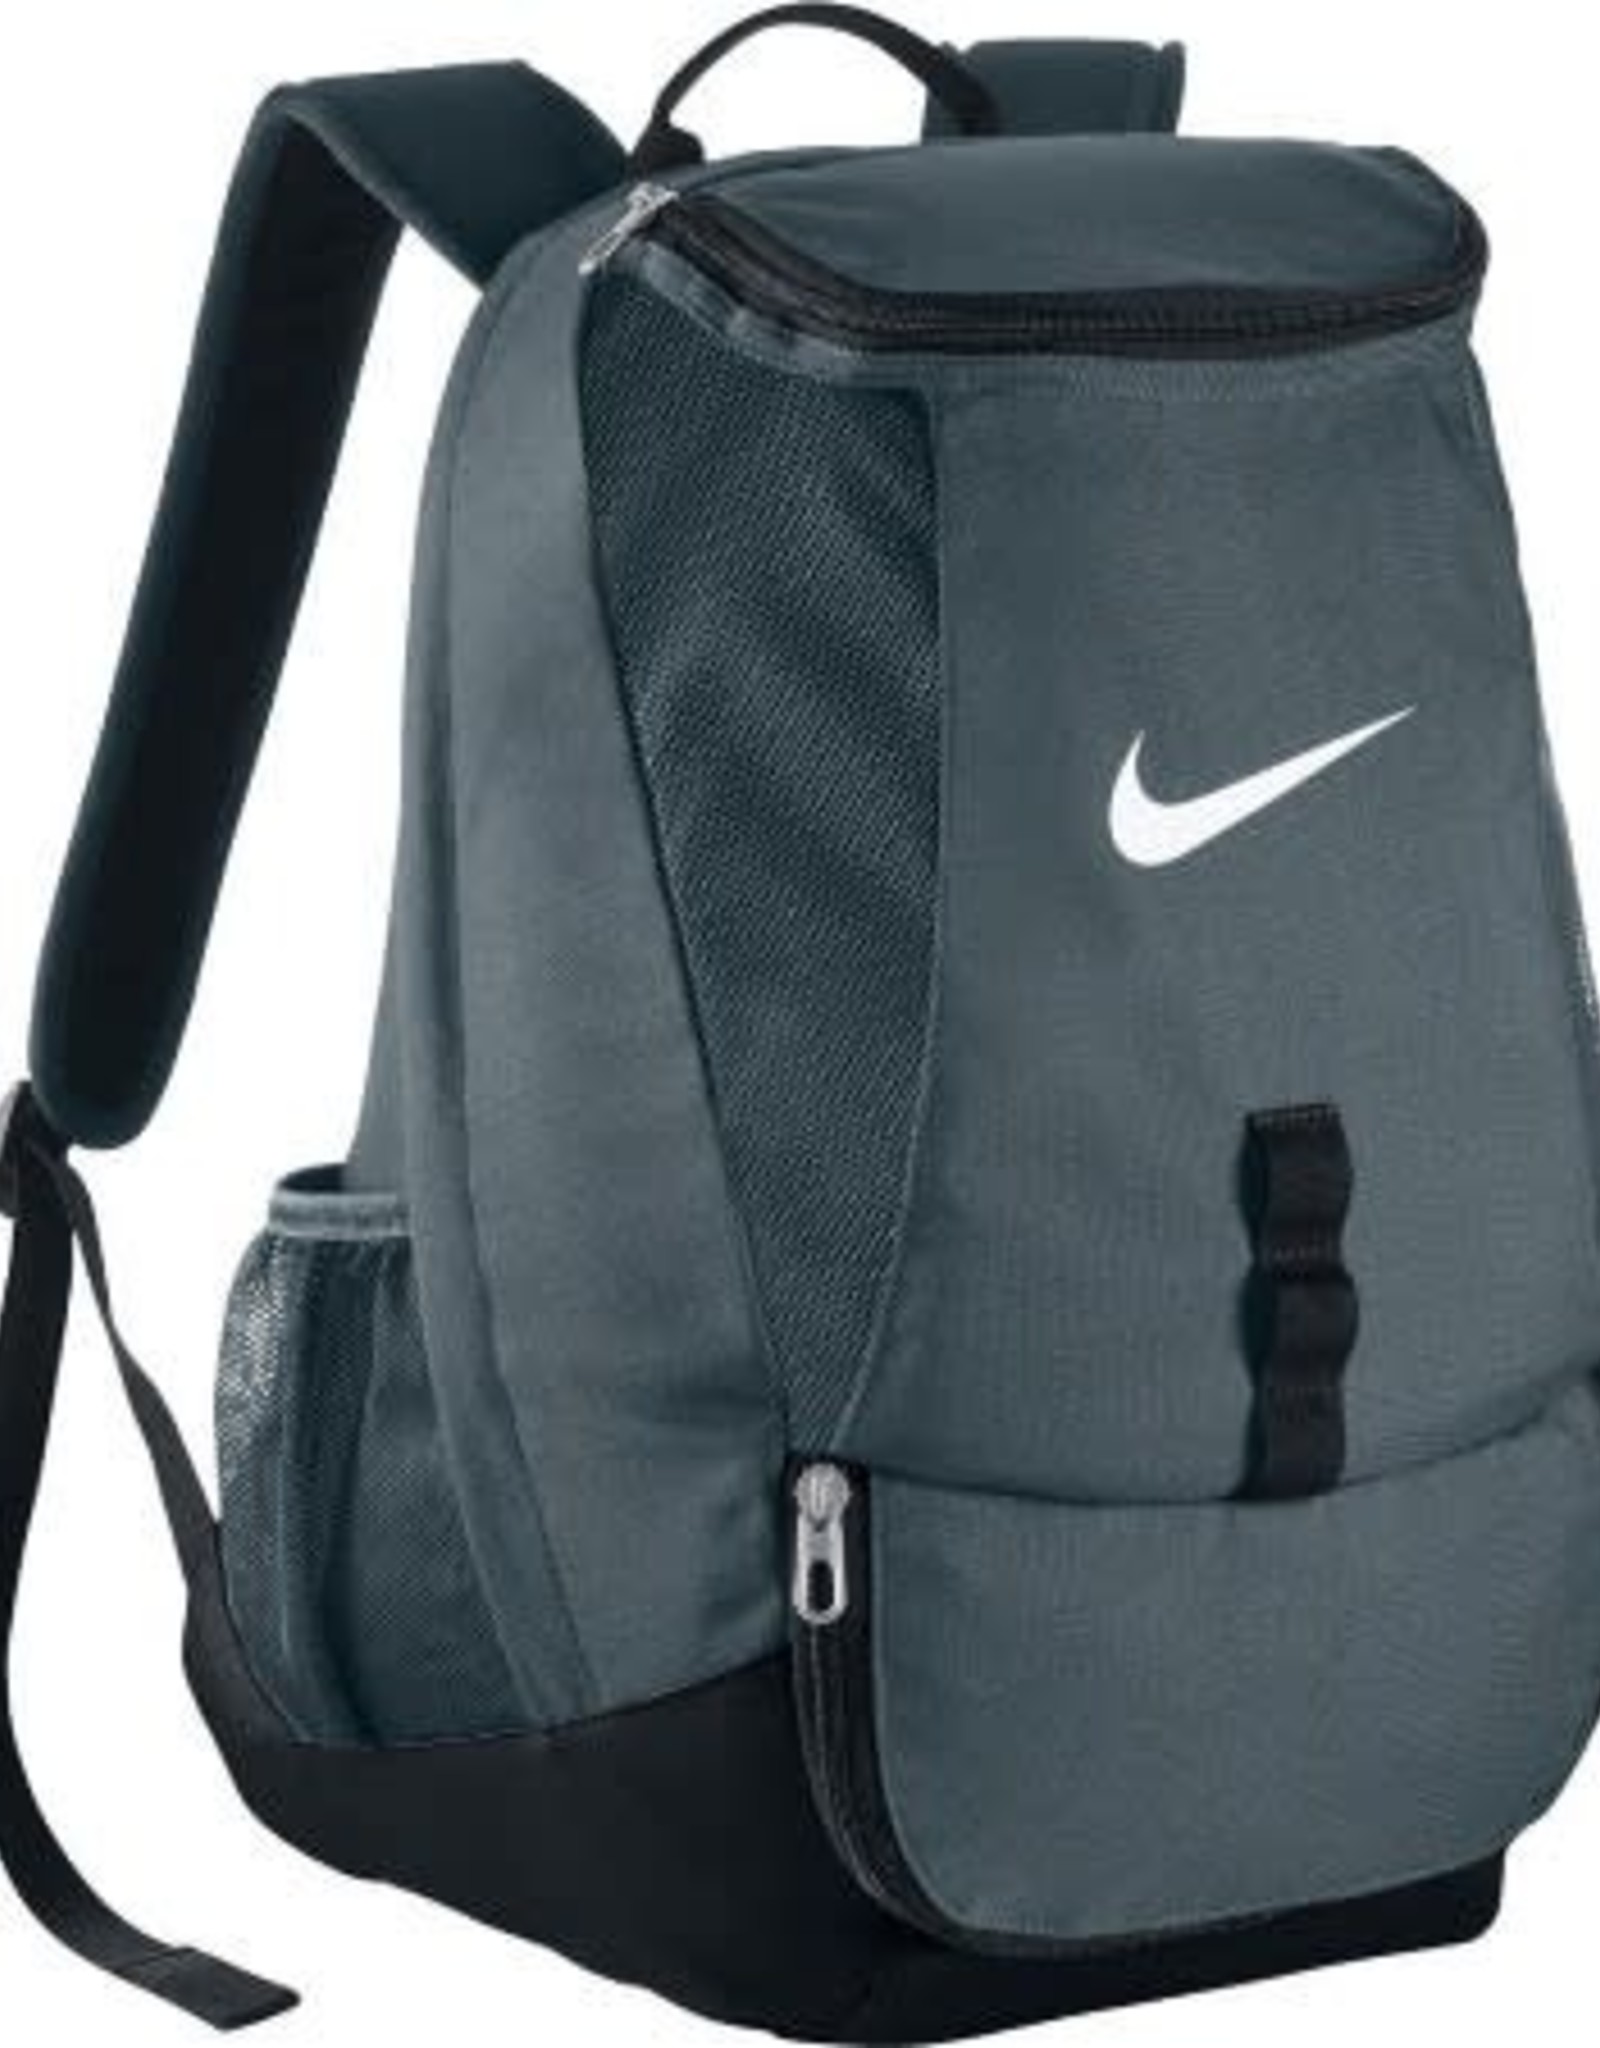 Nike Nike Club Team Back Pack